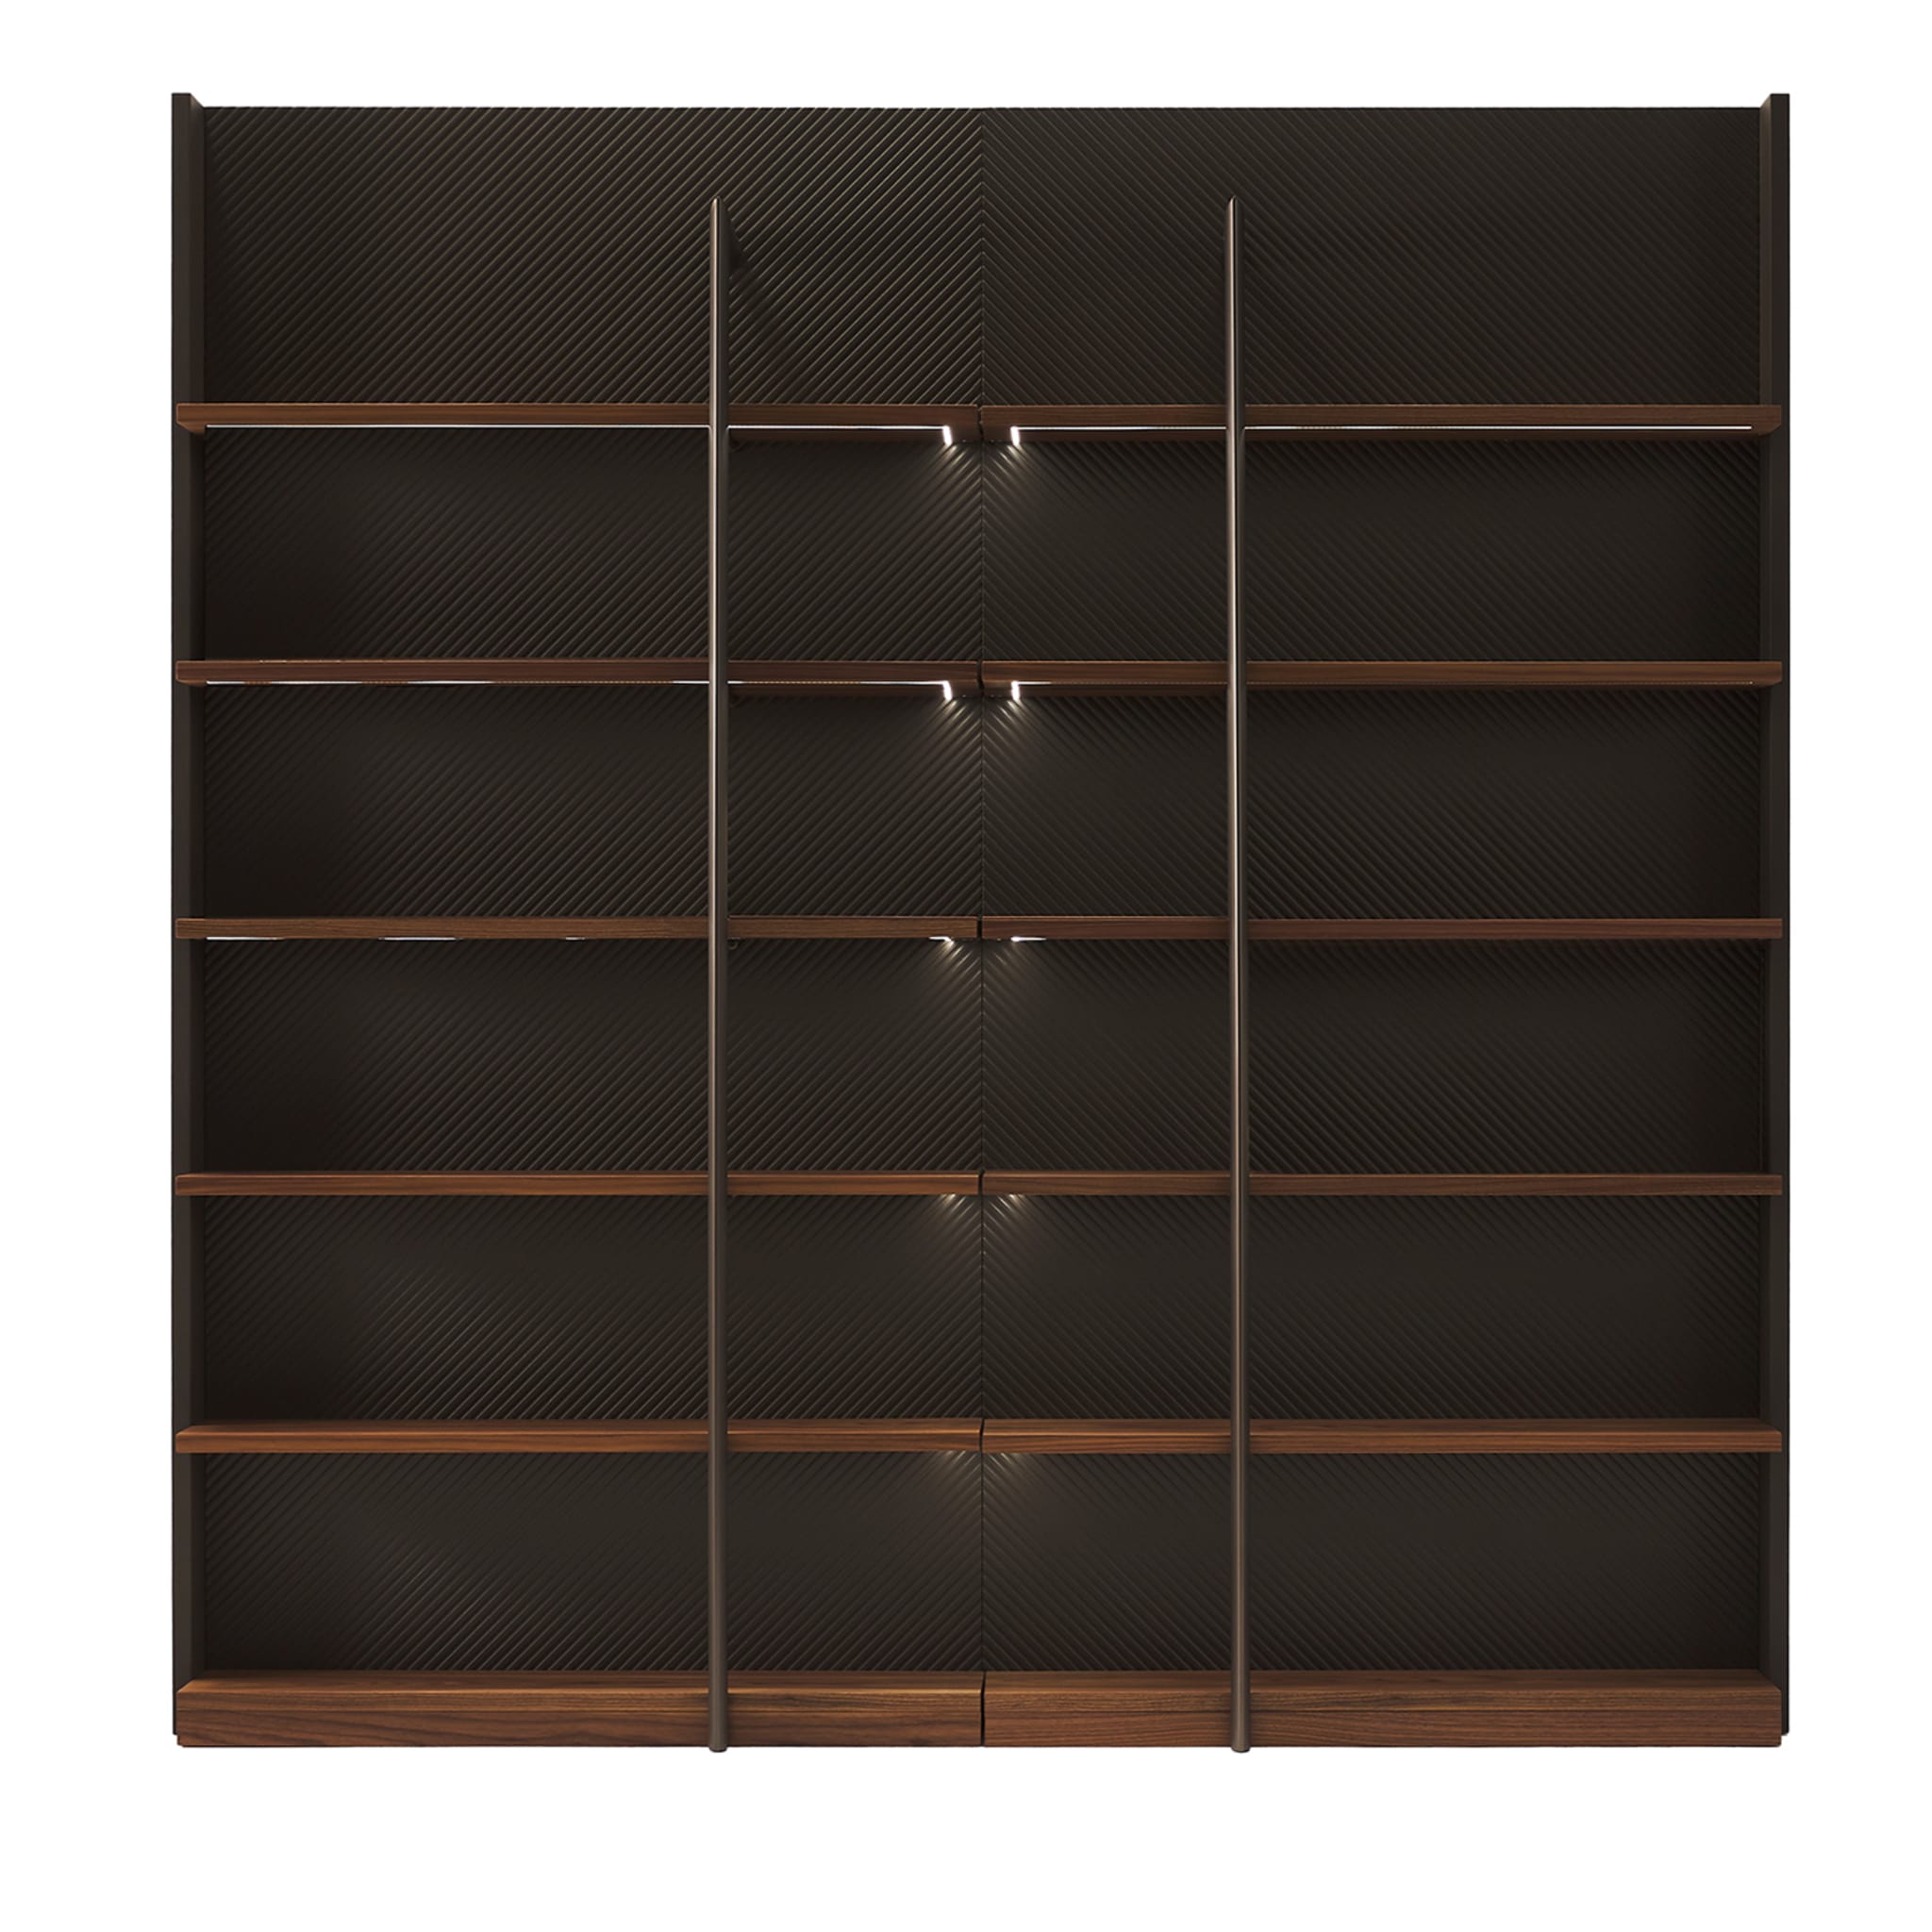 Rialto 6-Shelf Bookcase - Main view